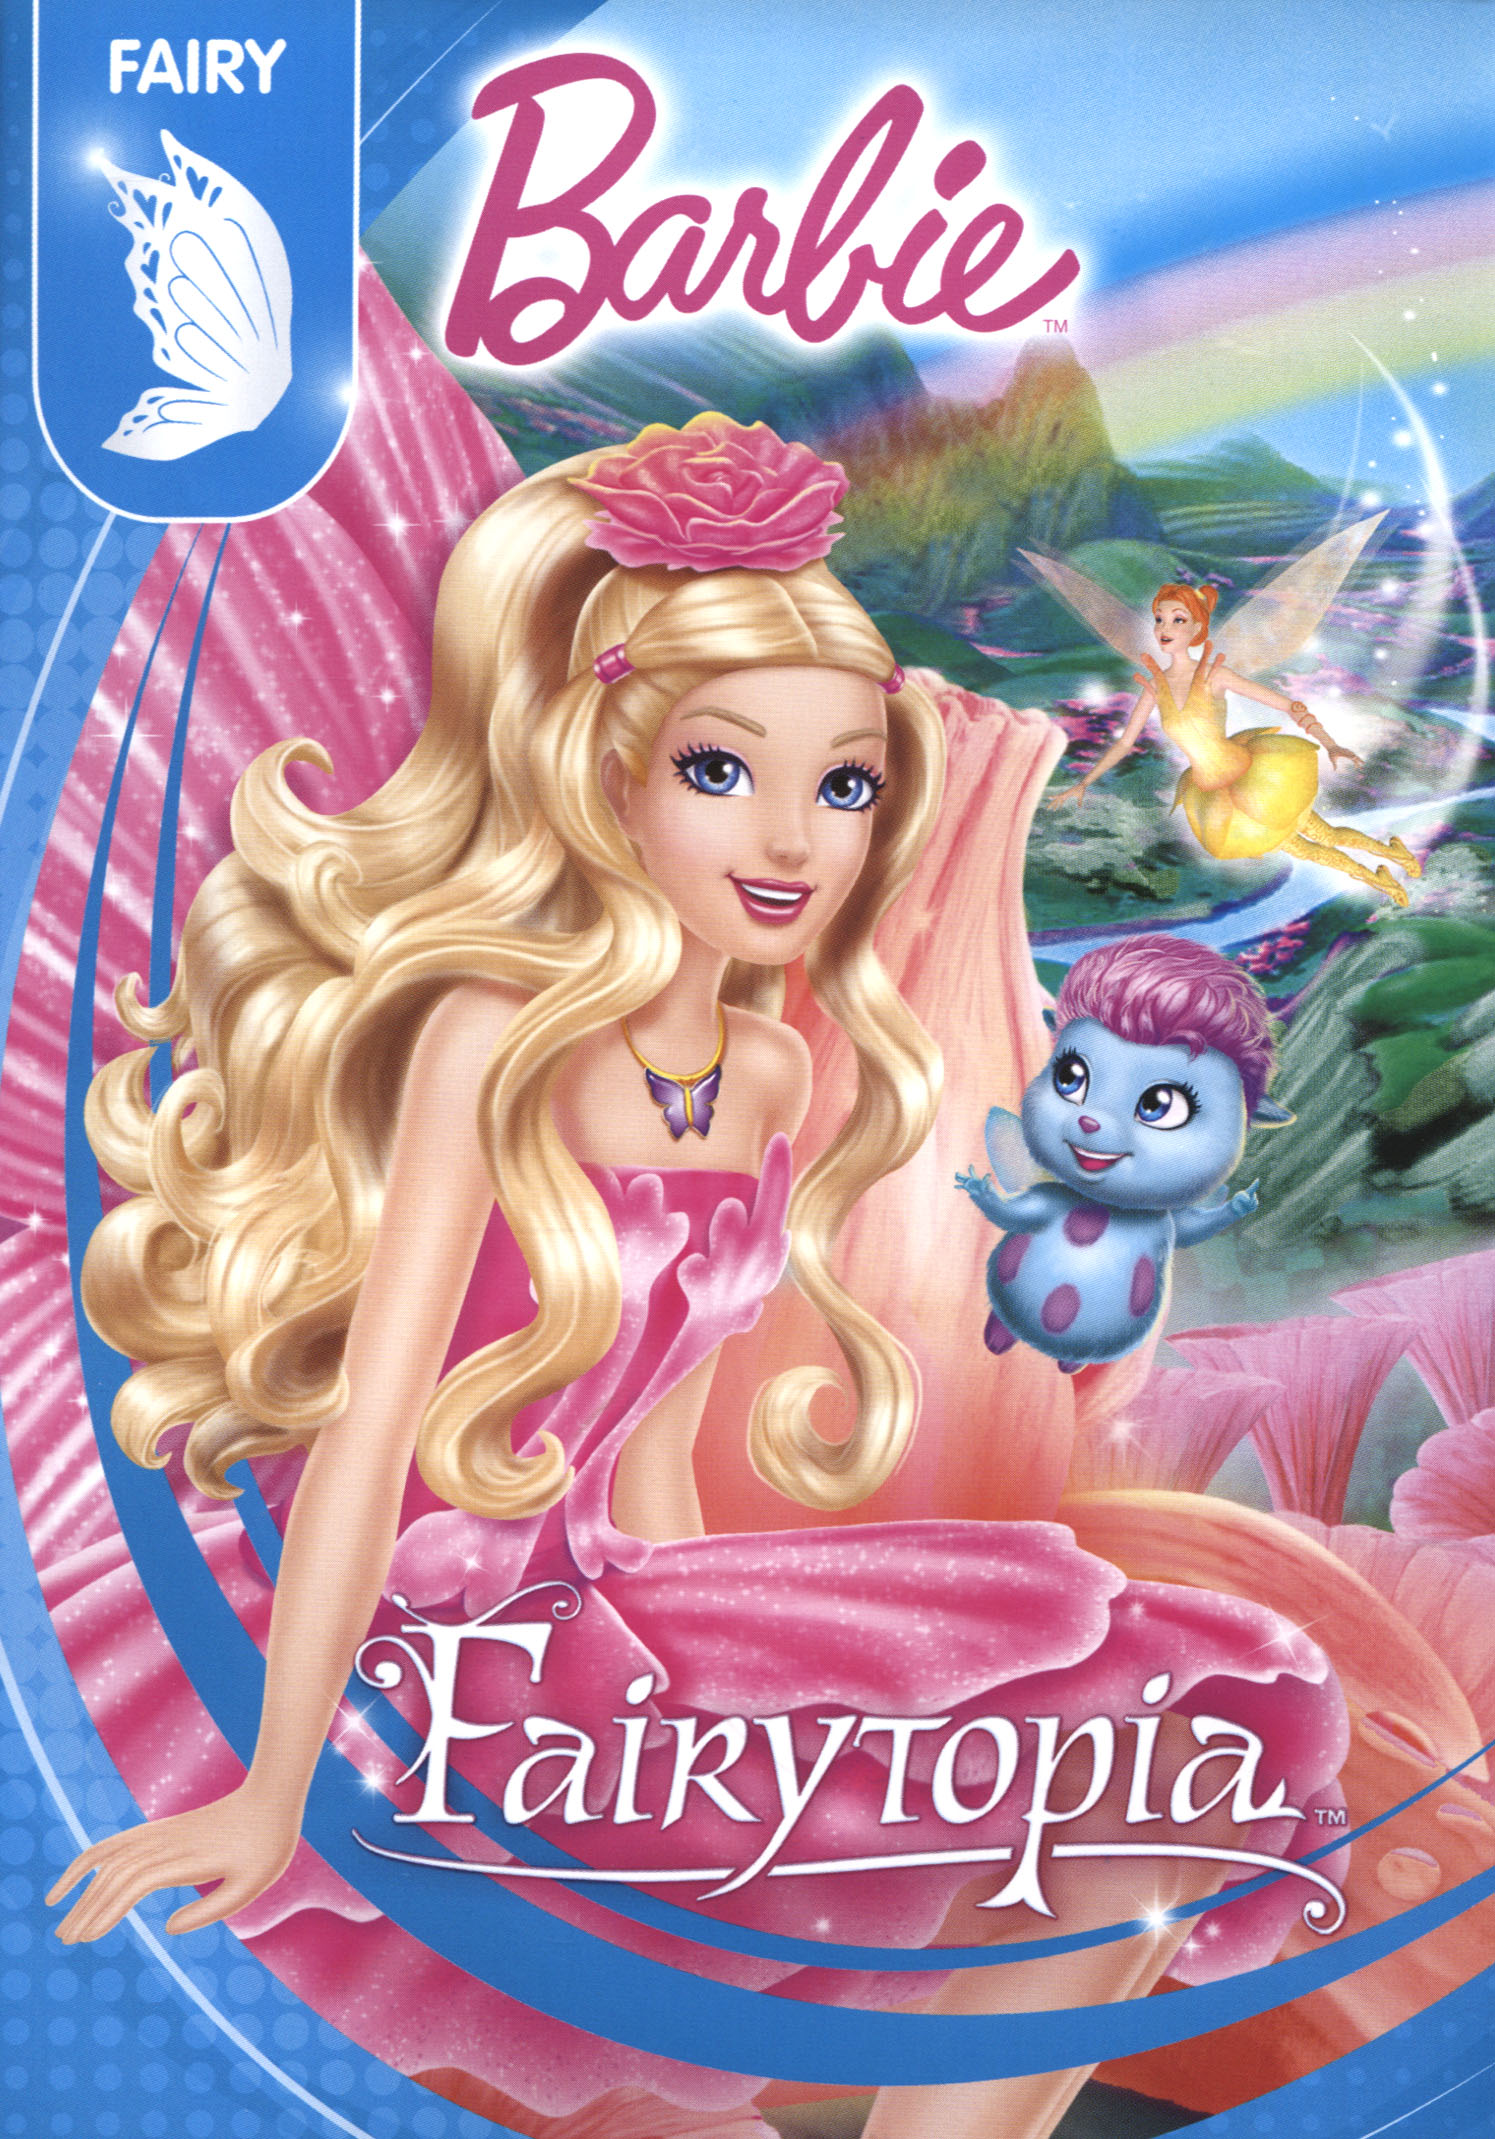 Barbie: Fairytopia [DVD] [2005]